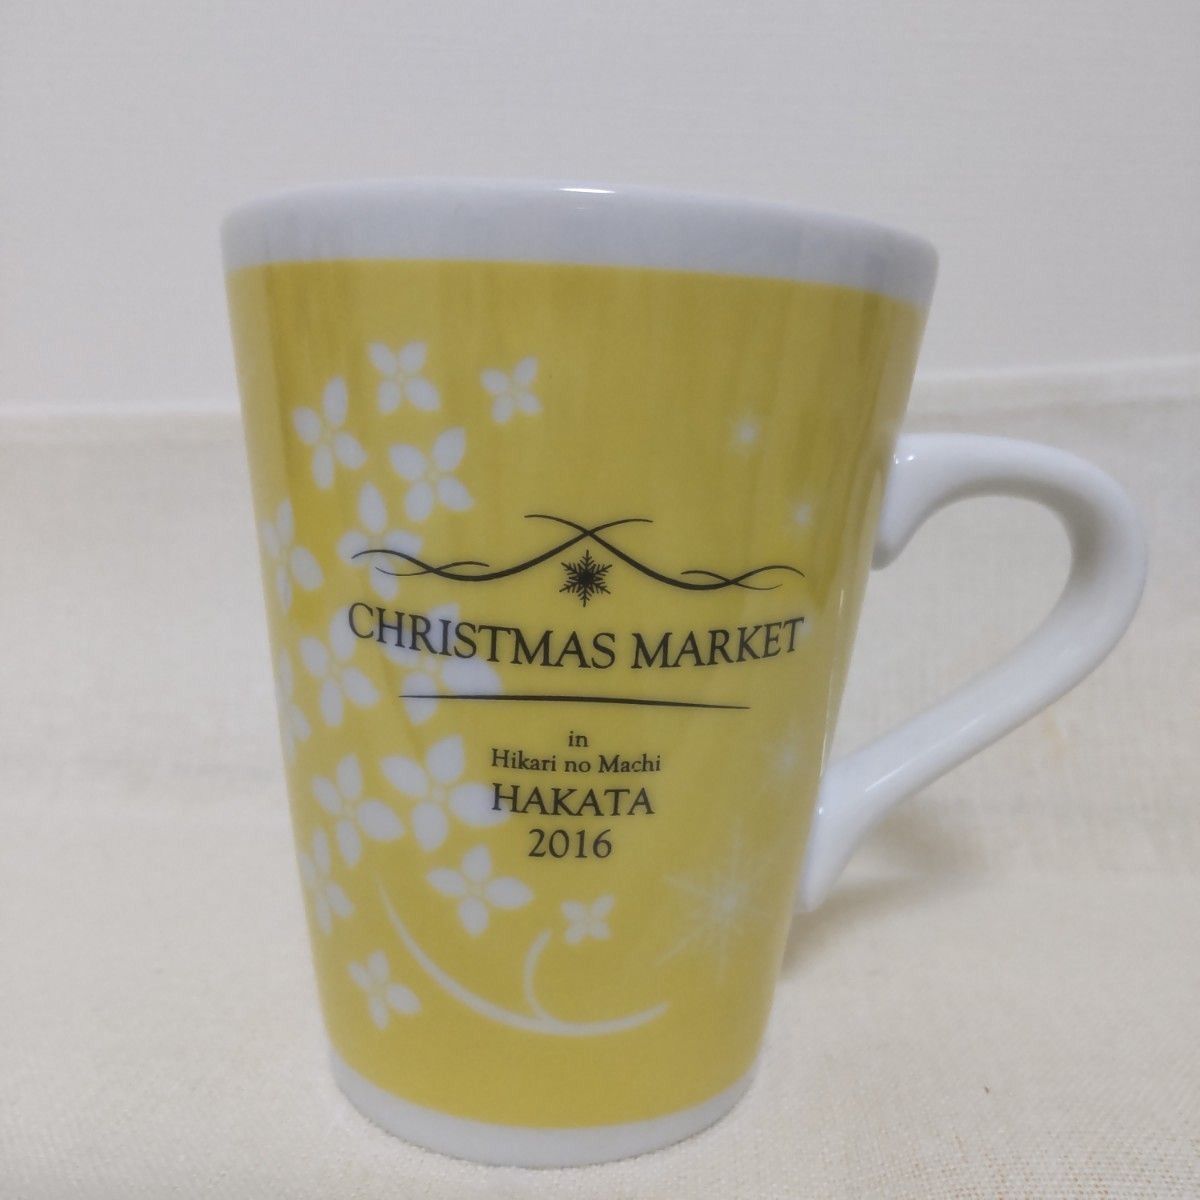 クリスマスマーケット 福岡 マグカップ プレミアグッズ クリスマスアドベント 6個 セット 食器